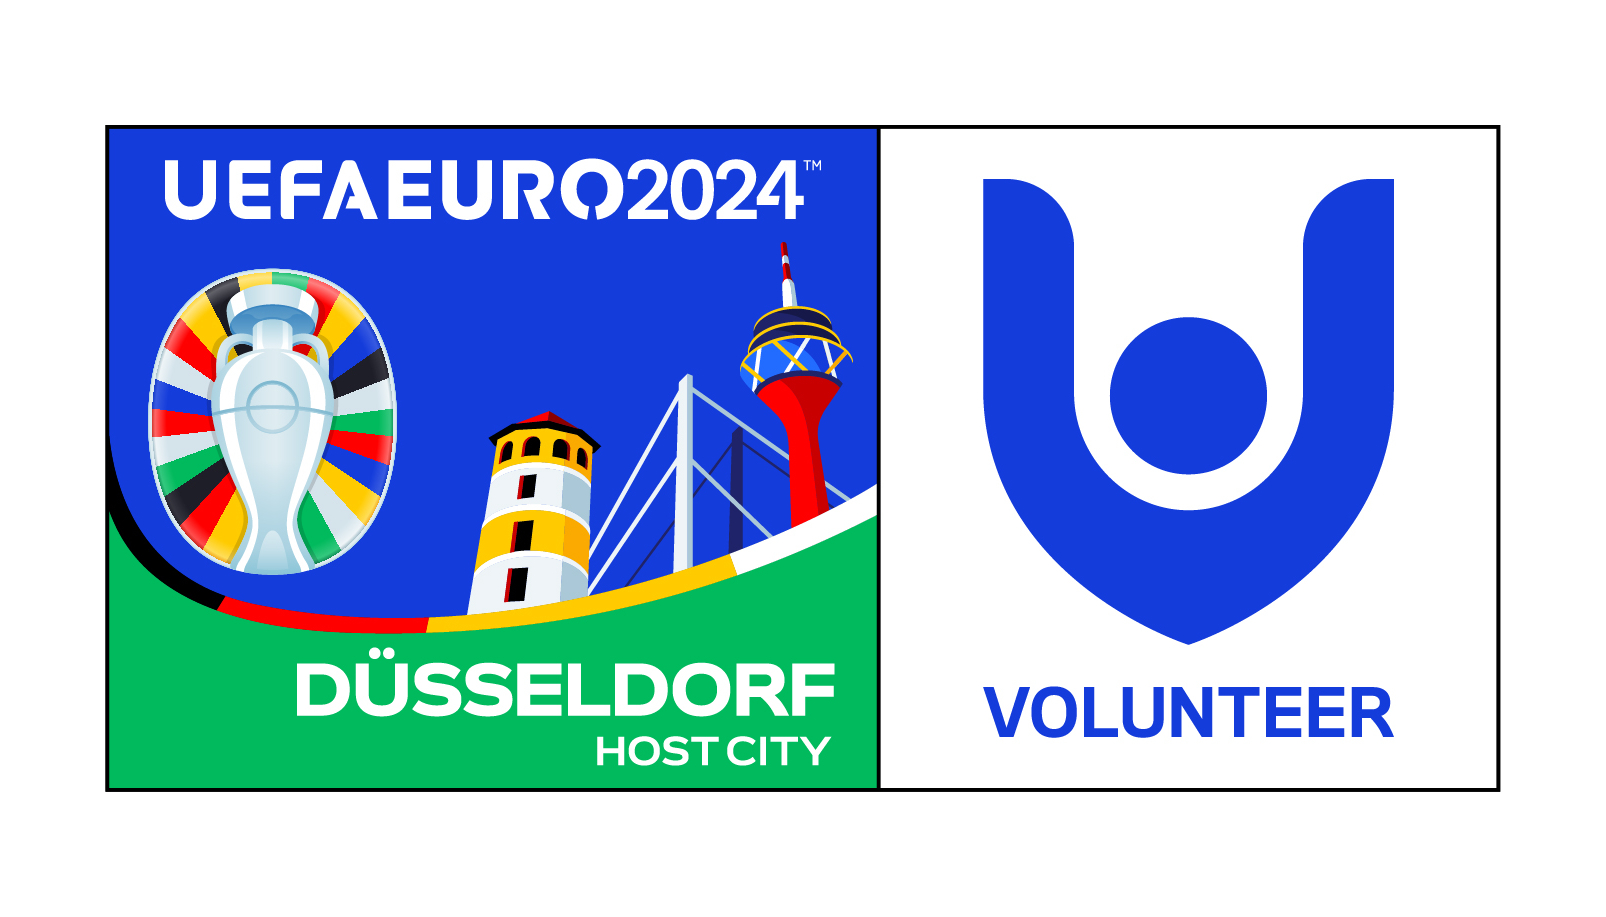 VolunteerLogo der UEFA EURO 2024 in Deutschland veröffentlicht